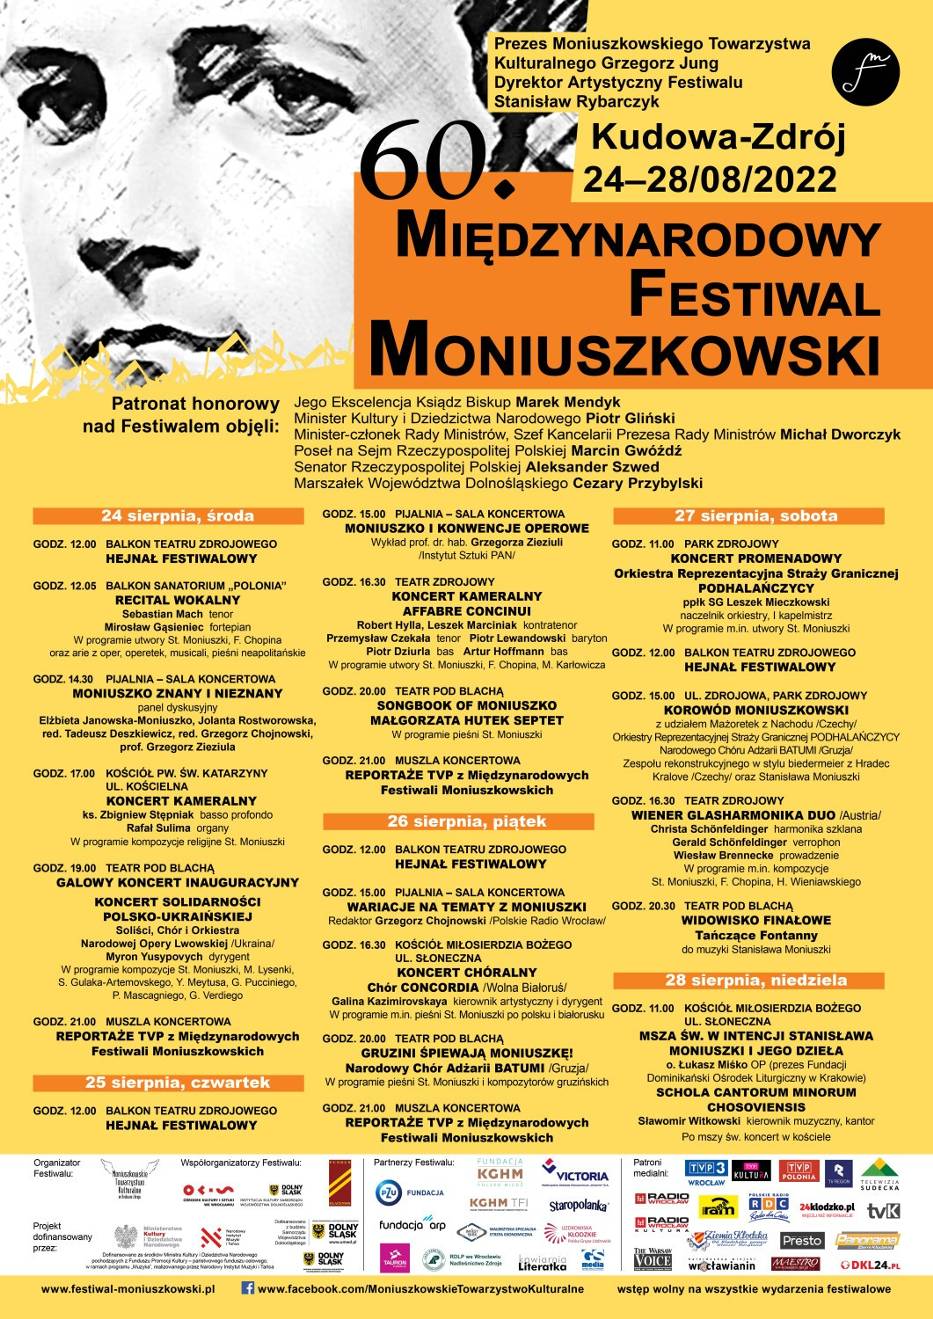 W Kudowie-Zdroju trwa 60. Międzynarodowy Festiwal Moniuszkowski 